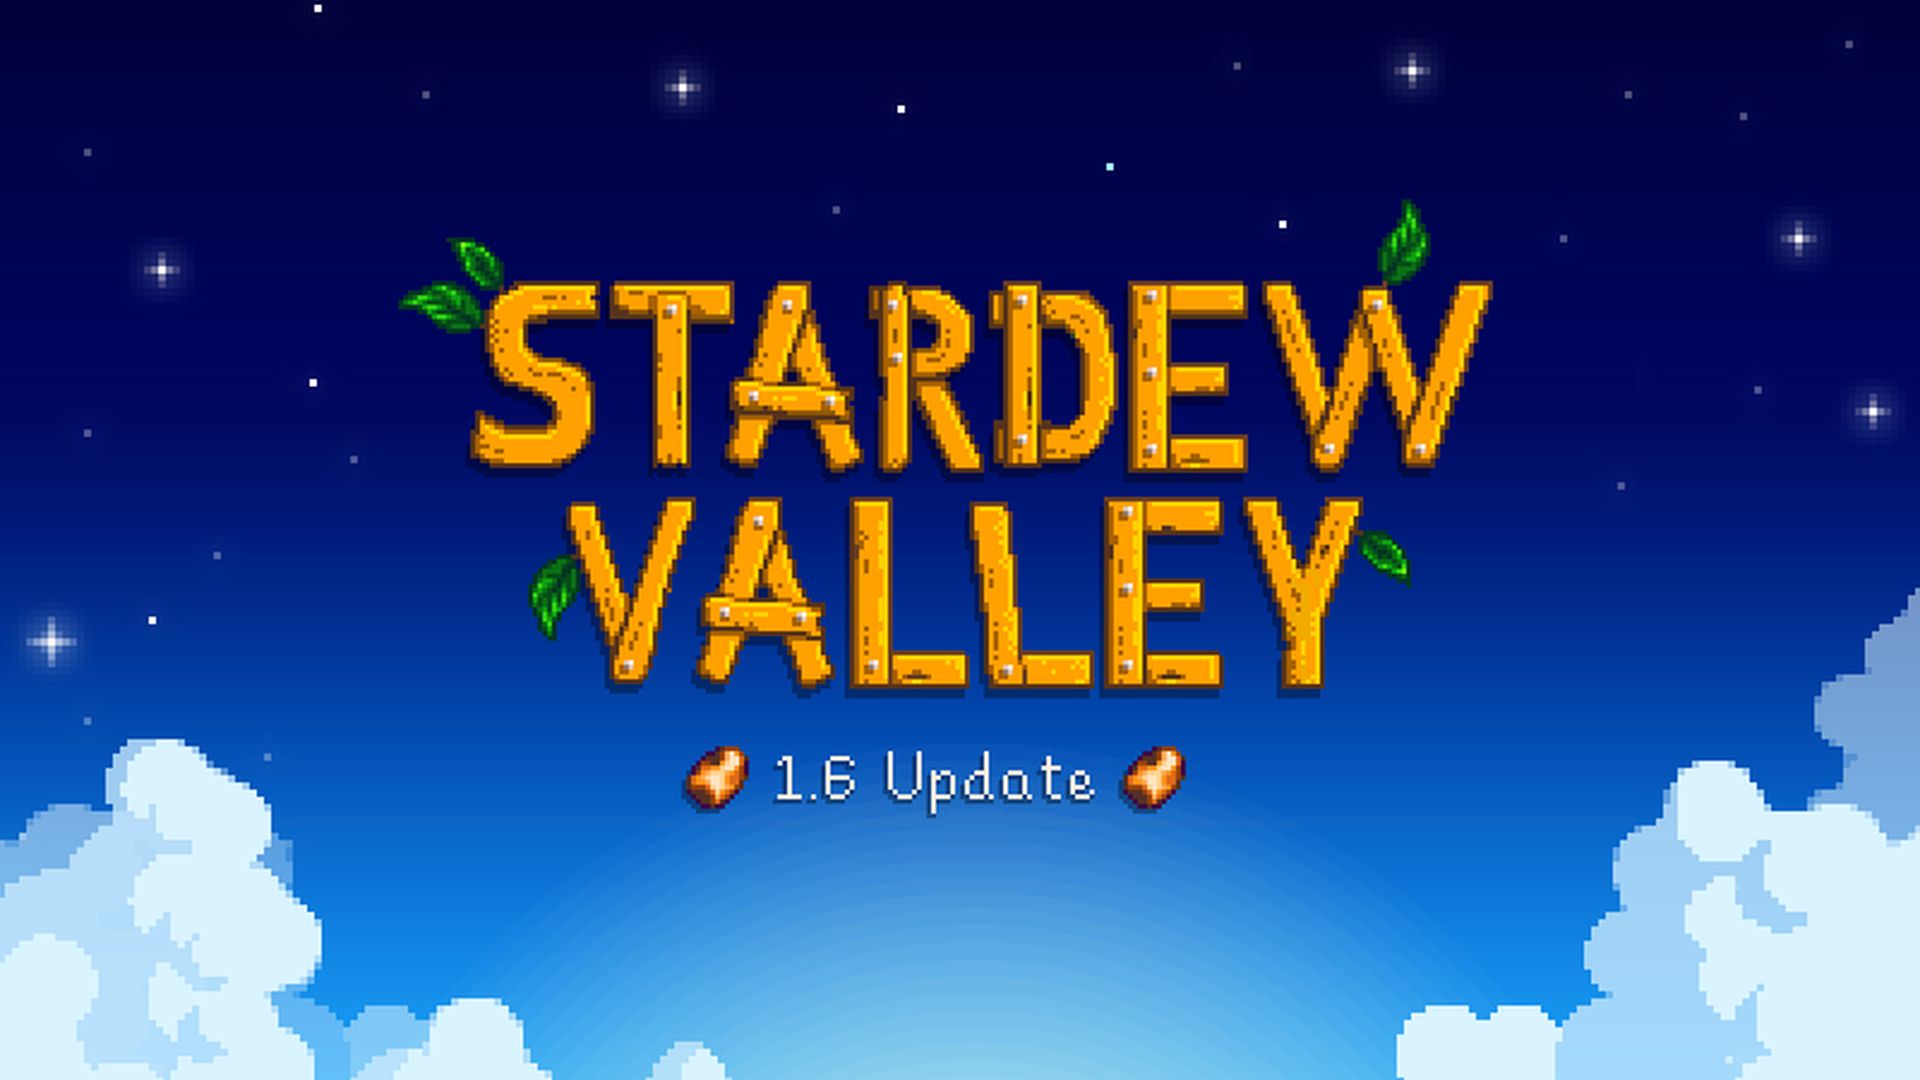 Stardew Valley 1.6 update: wanneer kunnen consolespelers meedoen?